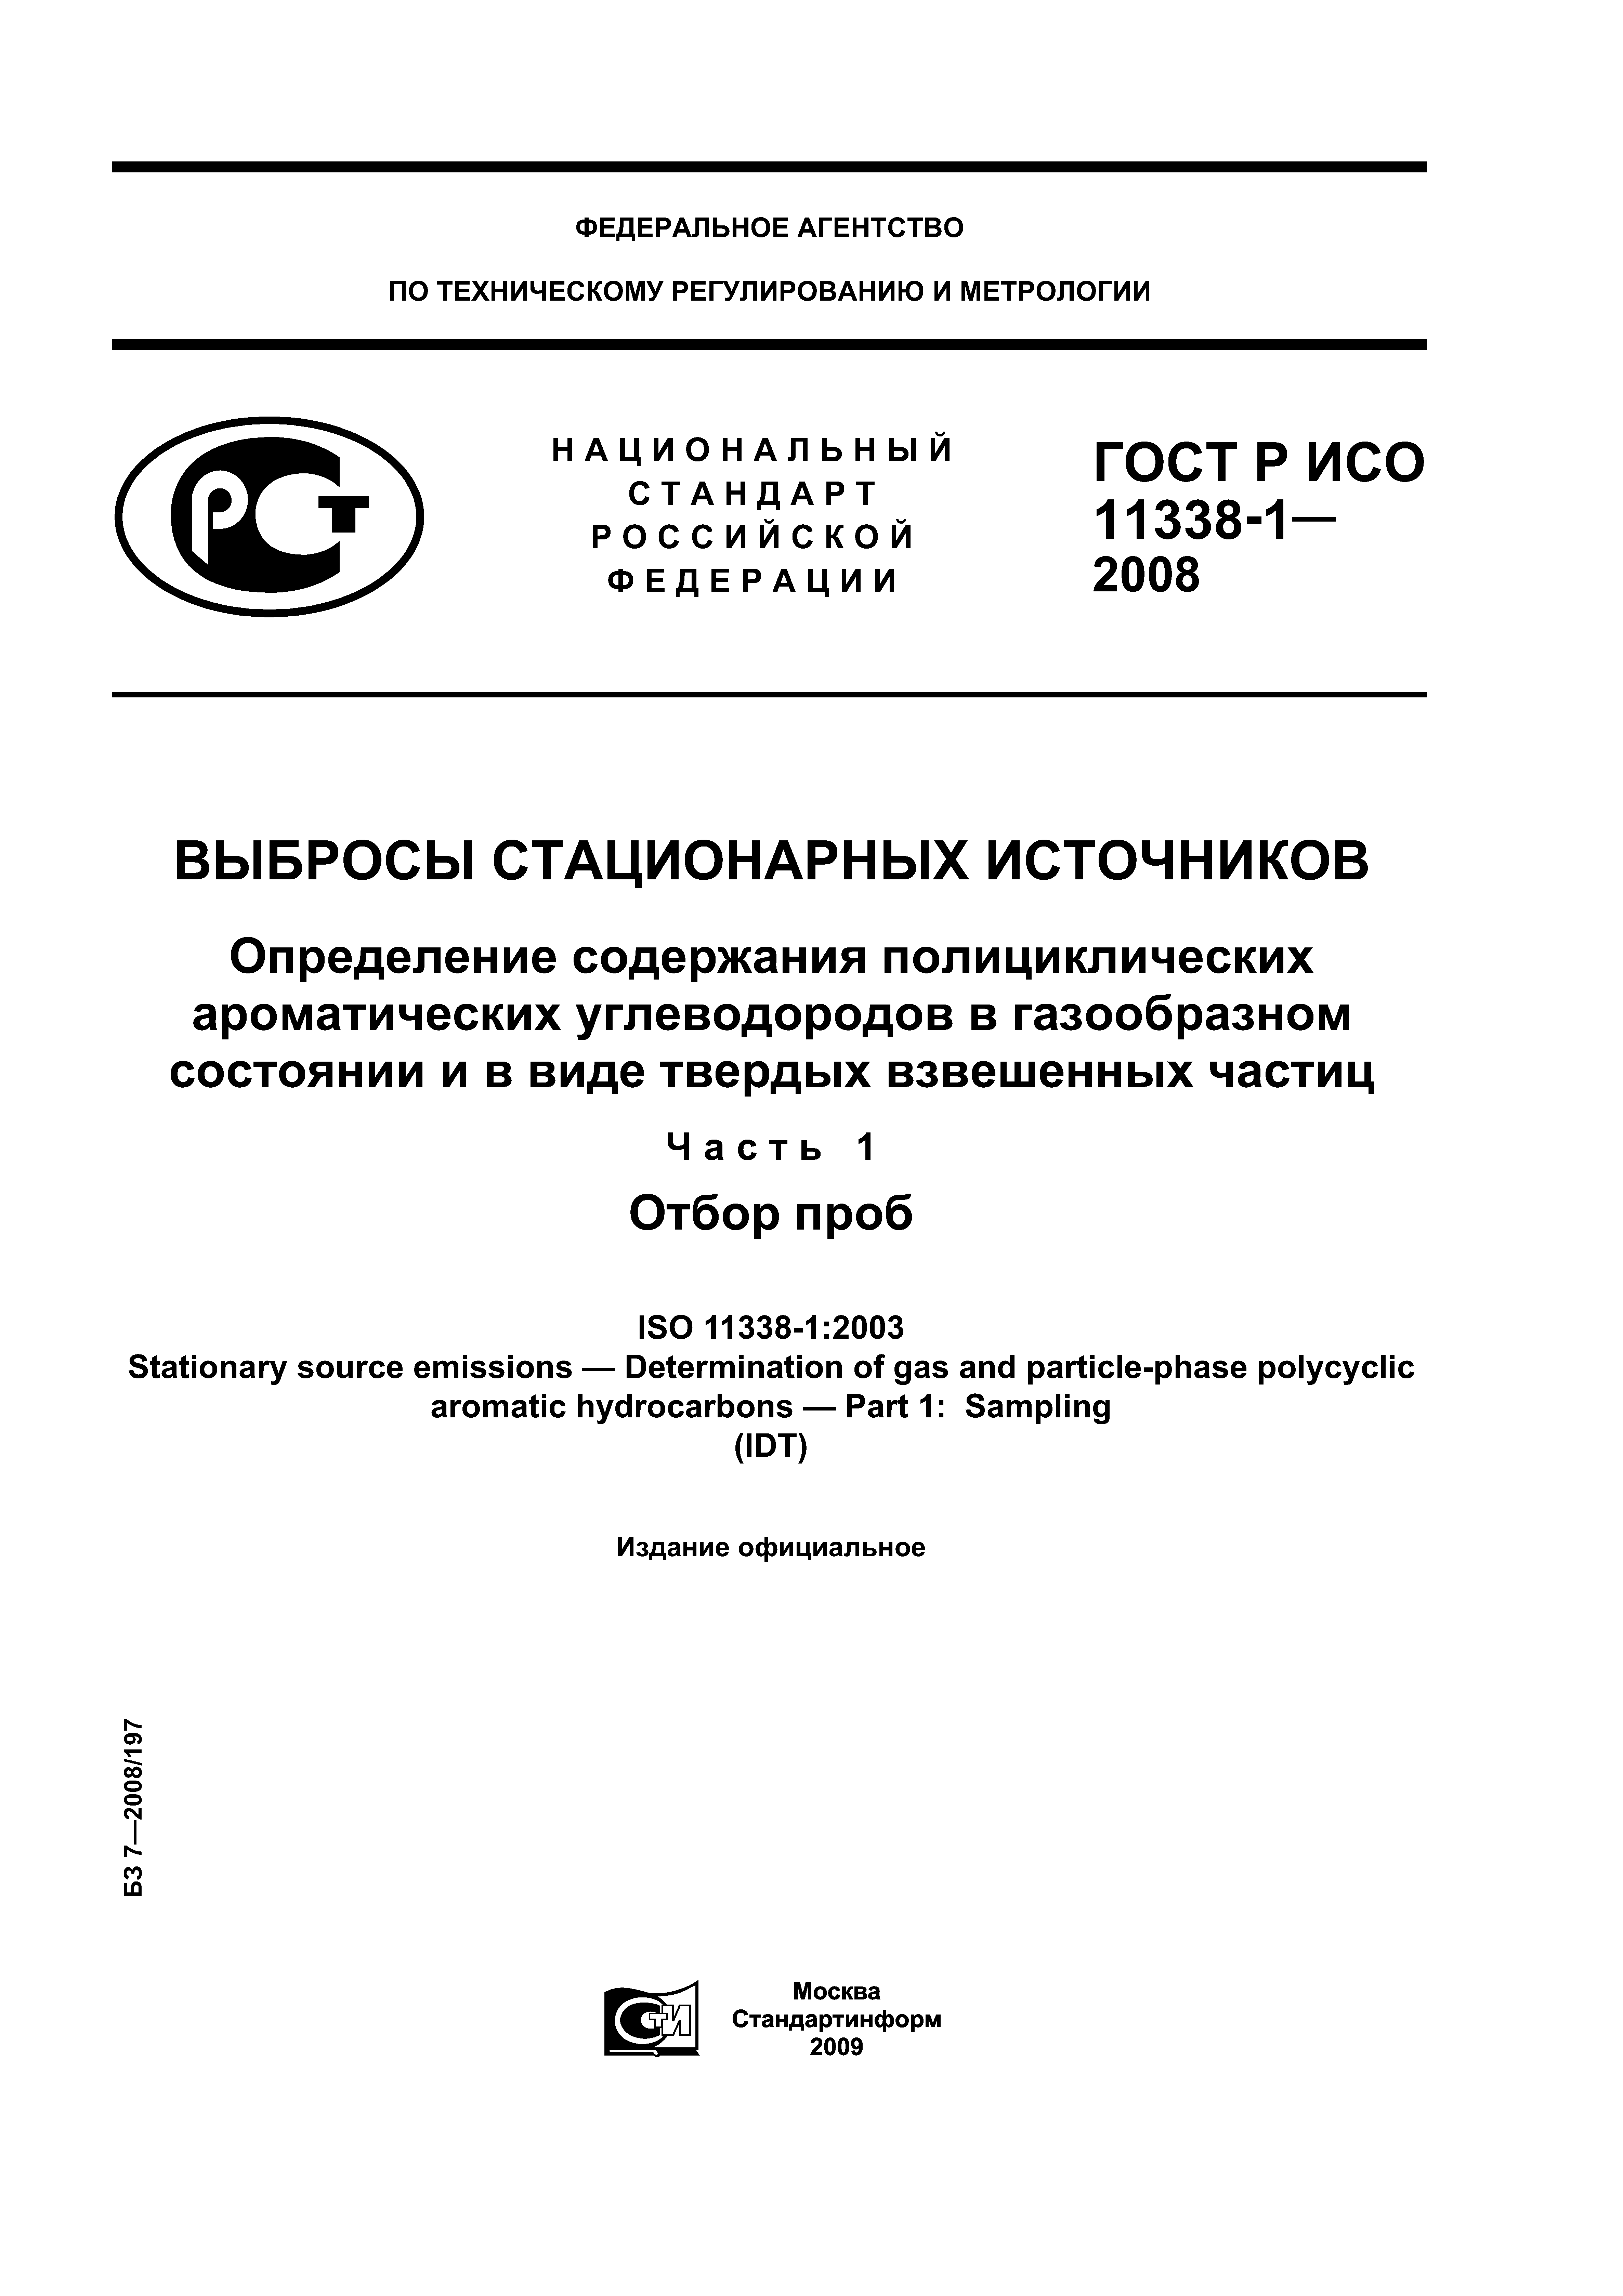 ГОСТ Р ИСО 11338-1-2008